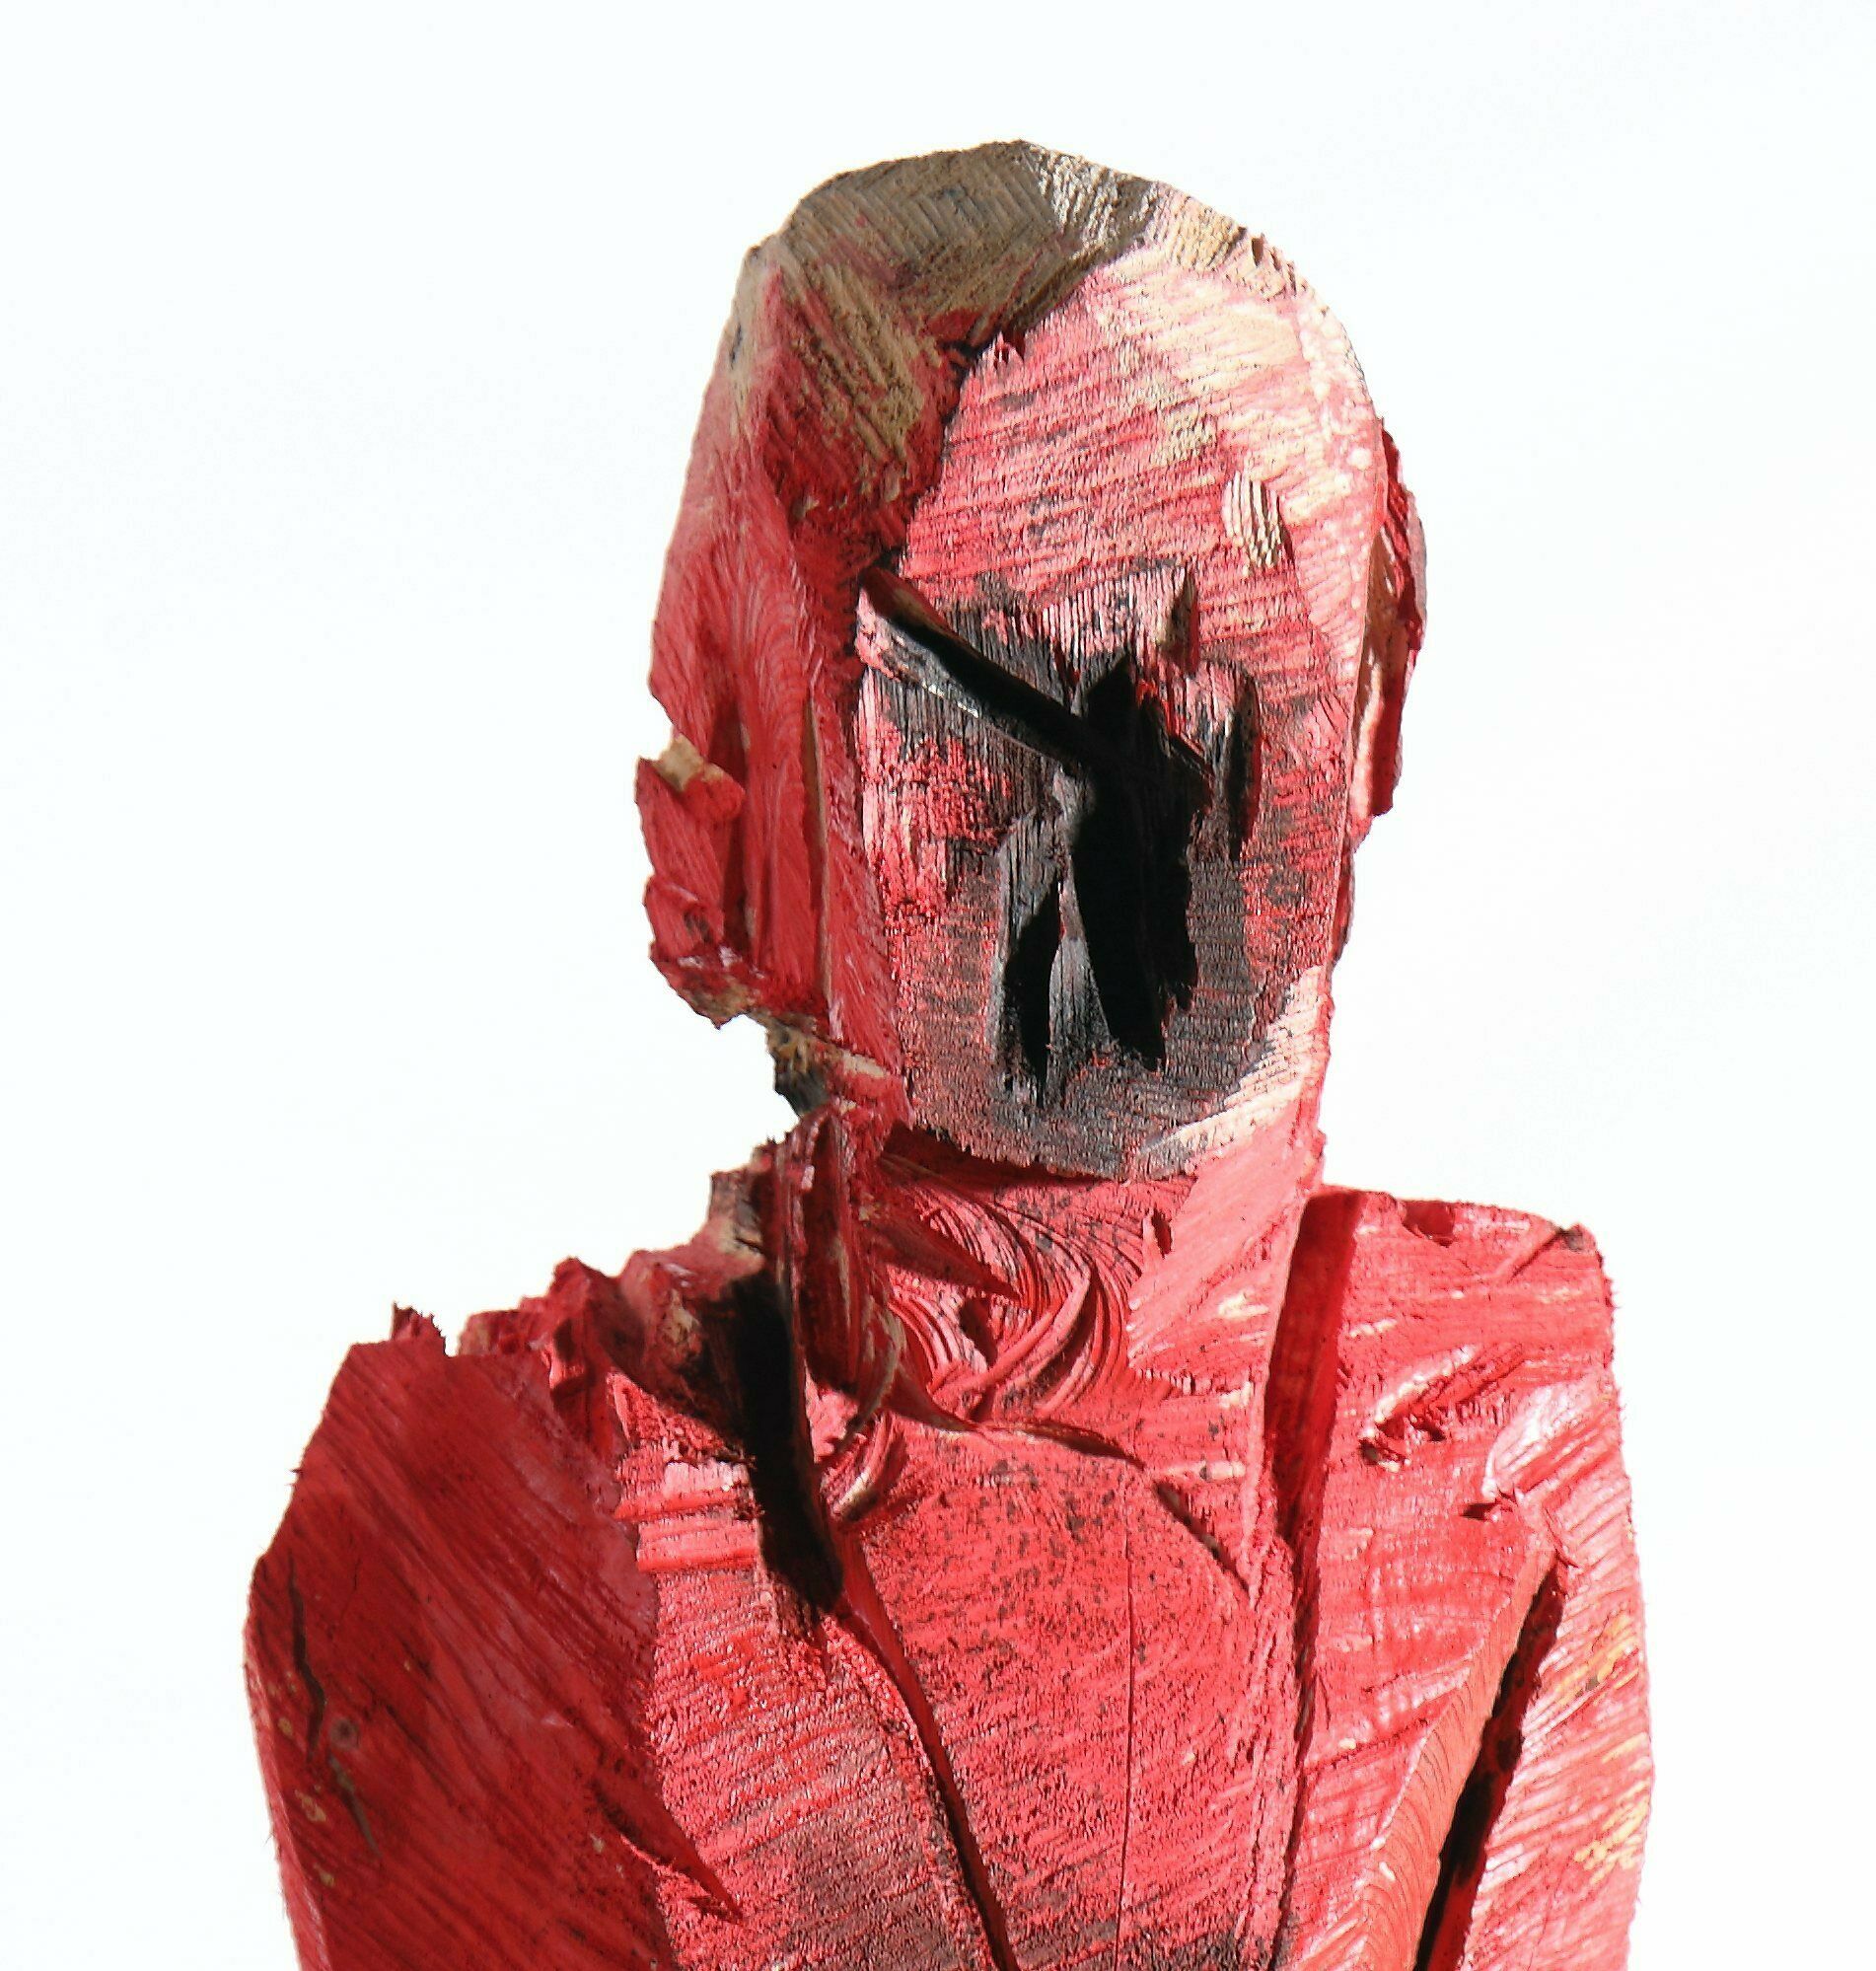 Sculpture "Regi" (2020)